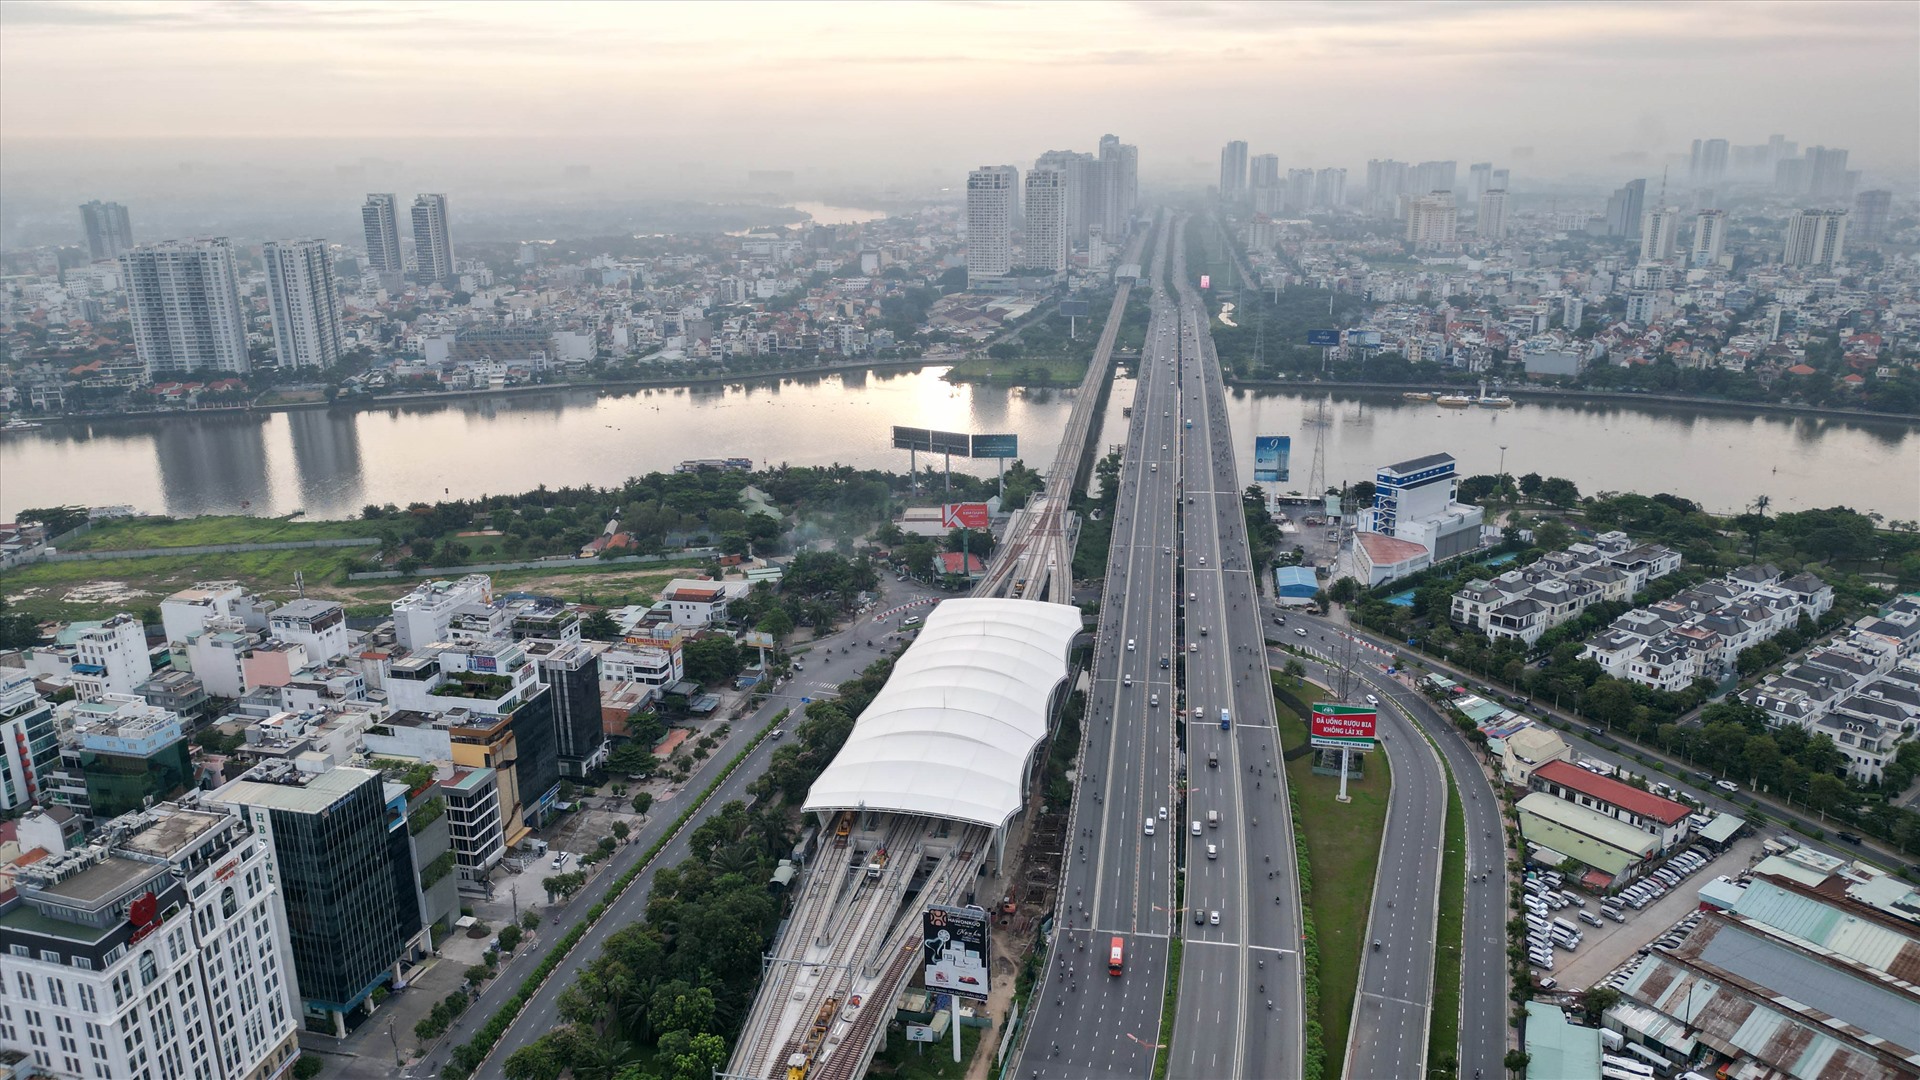 Đoạn đường đổi tên thành Võ Nguyên Giáp từ cầu Sài Gòn đến ngã tư Bình Thái với chiều dài là 5,9km, từ ngã tư Bình Thái đến ngã tư Thủ Đức với chiều dài là 1,89km.  